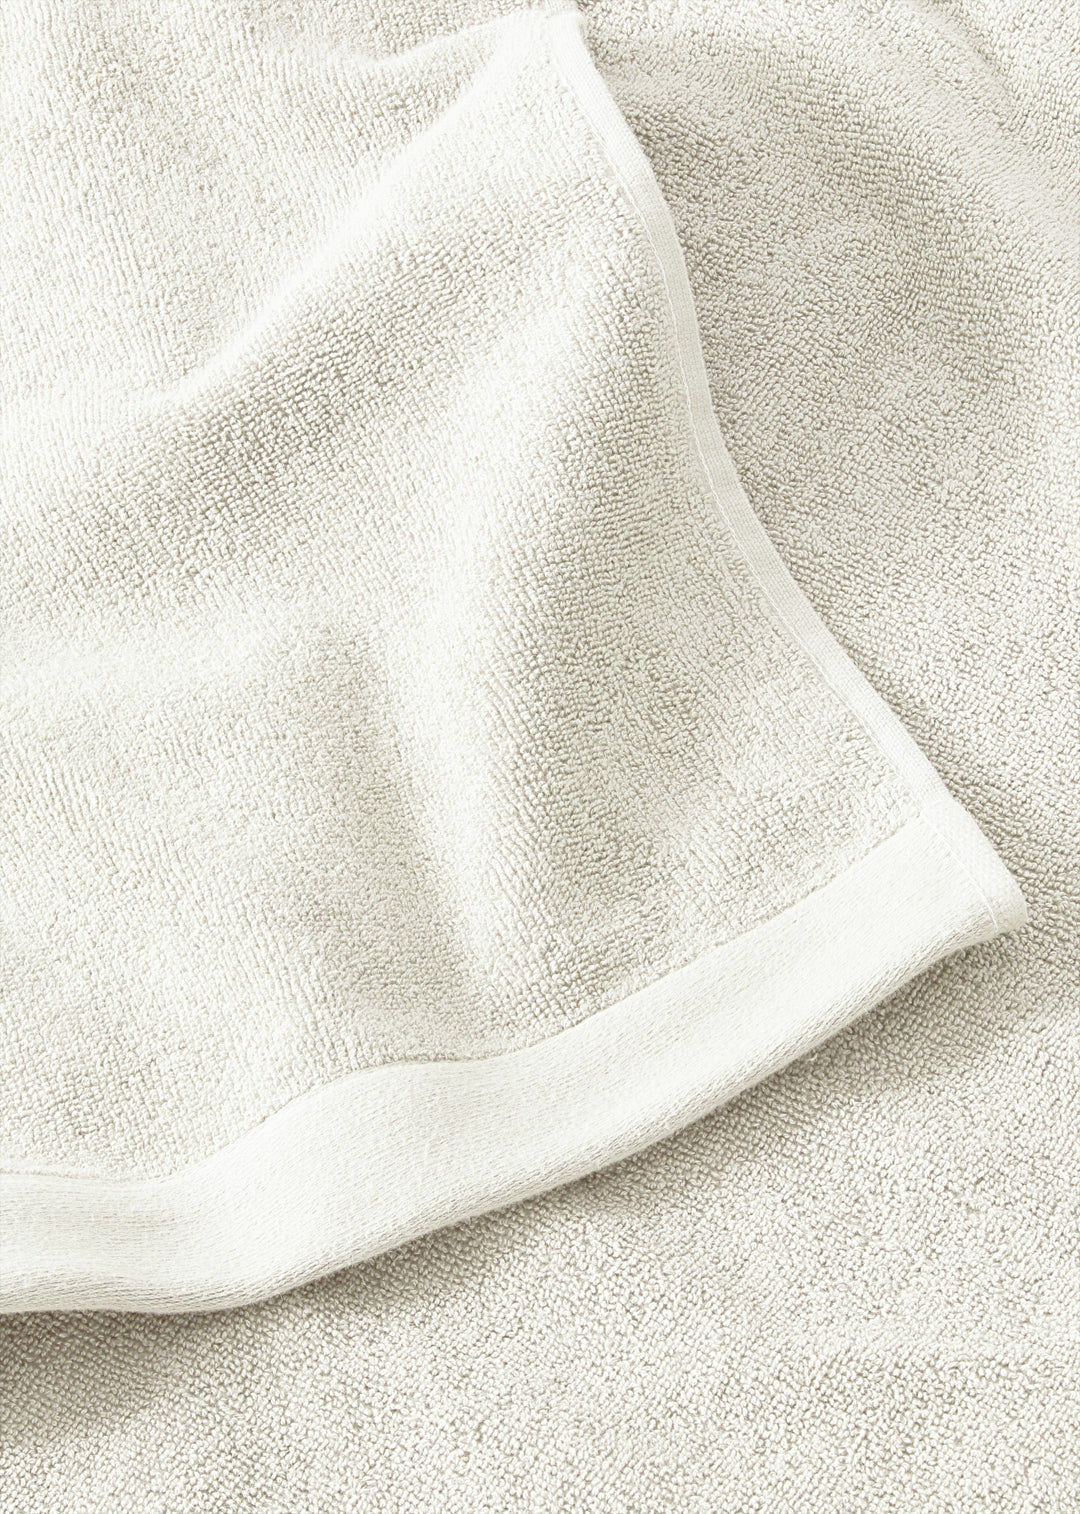 Handtuch Baumwolle Weiß 100 x 150 cm 2